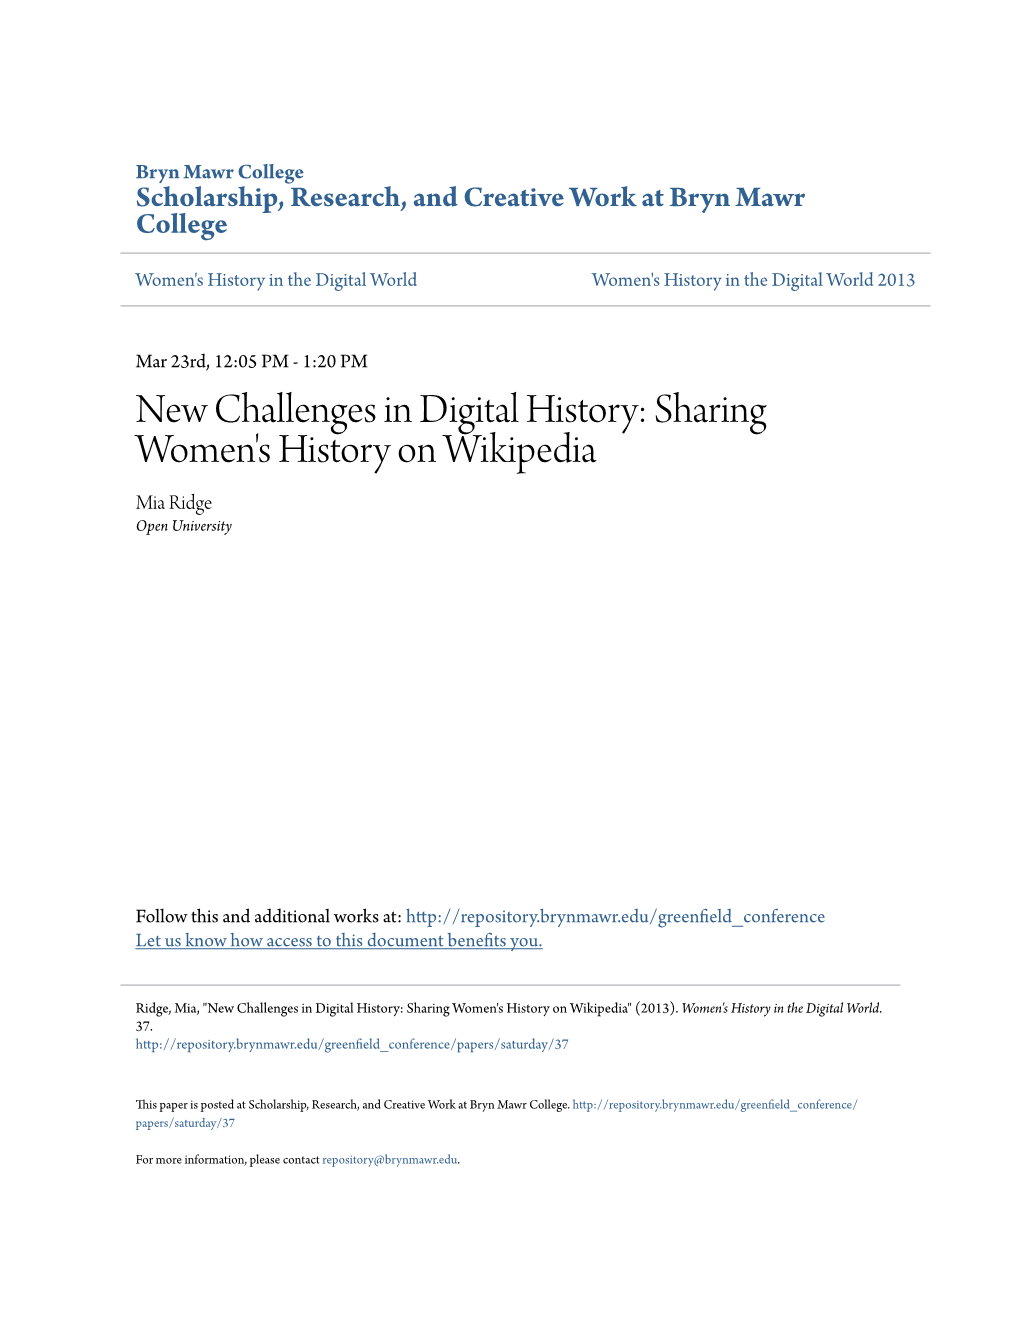 Sharing Women's History on Wikipedia Mia Ridge Open University